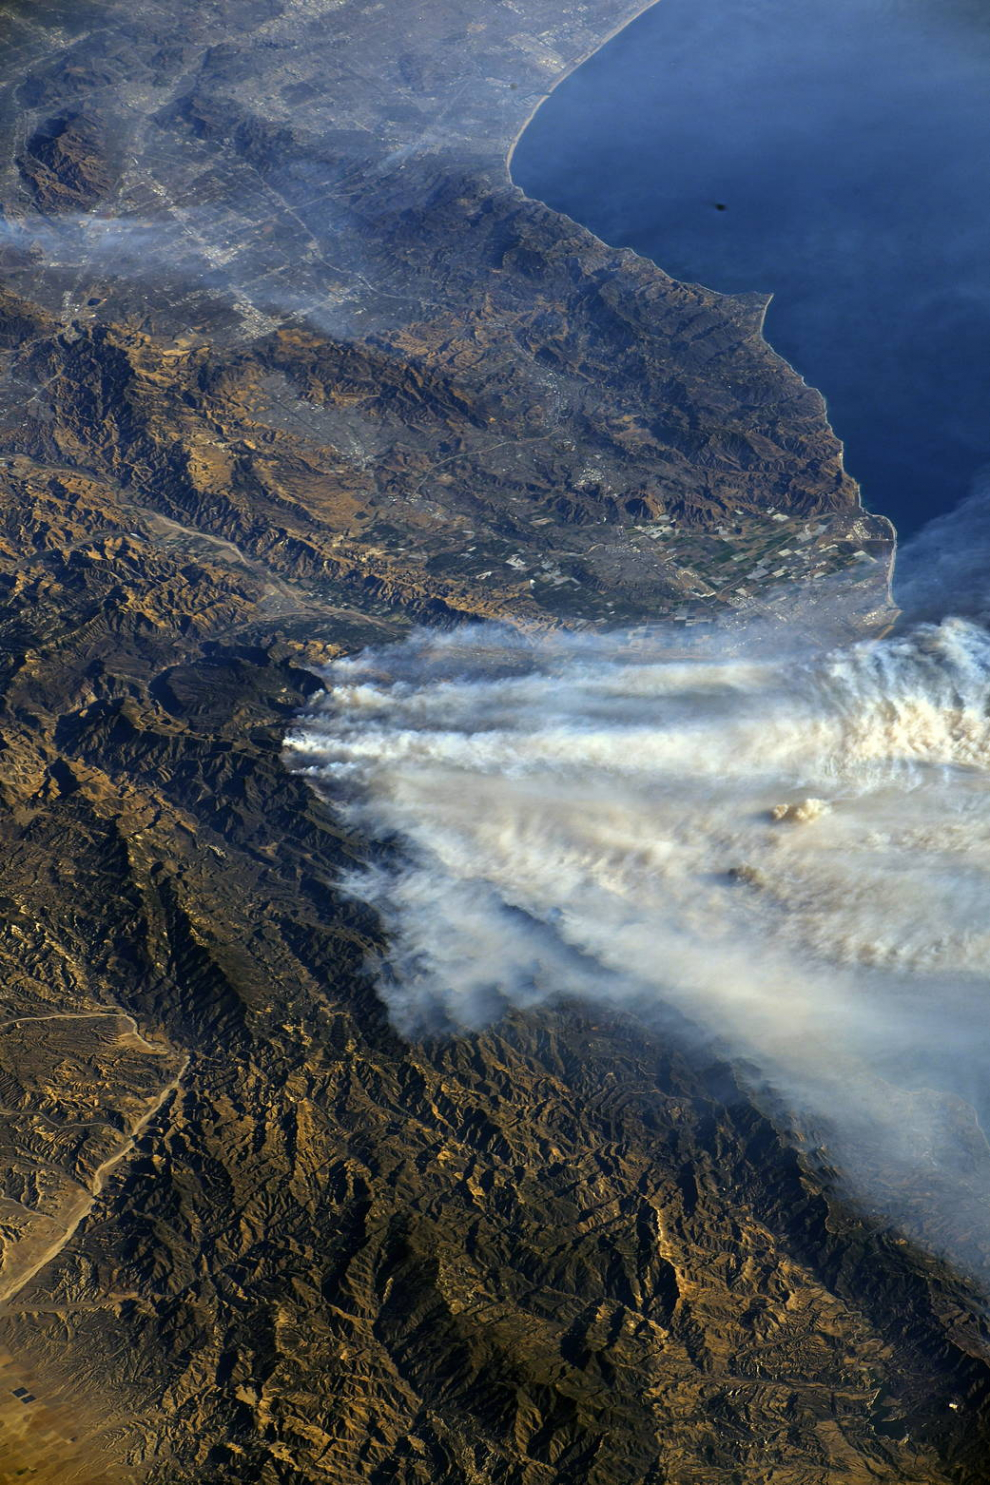 El astronauta de la NASA, Randy Bresnik, captó esta fotografía de los incendios forestales en el sur de California durante la Expedición 53 de la ISS.